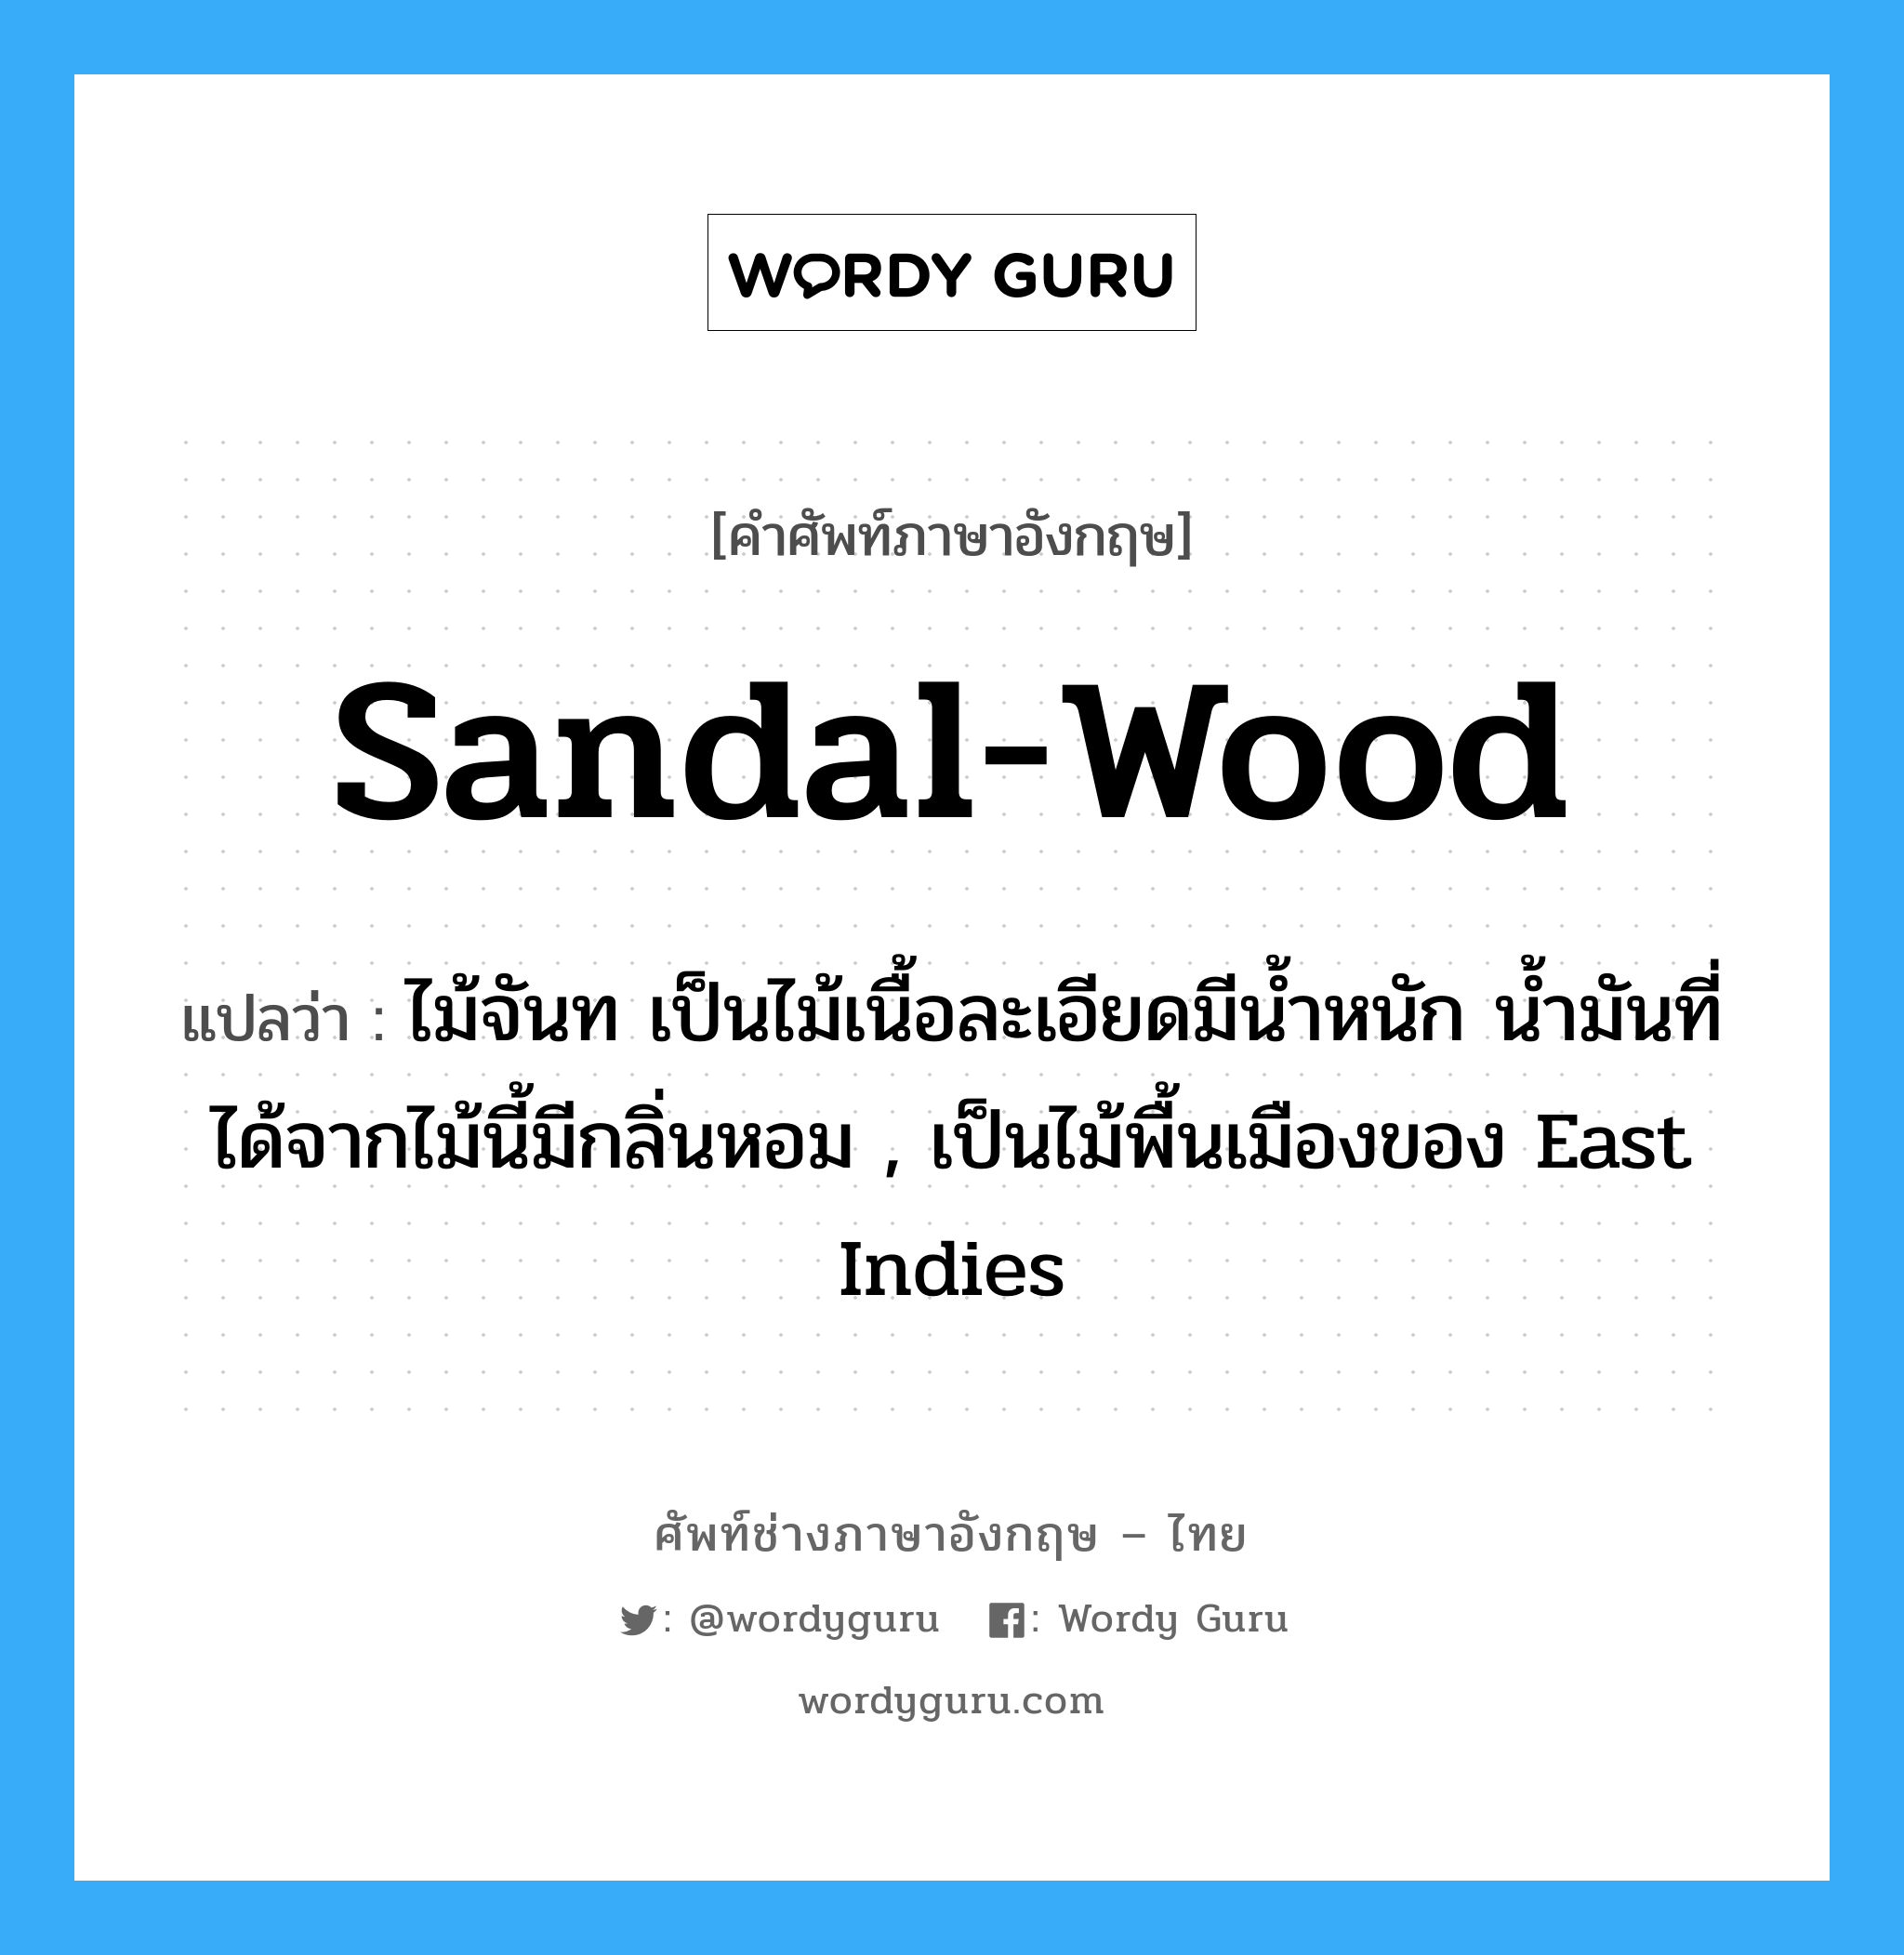 sandal-wood แปลว่า?, คำศัพท์ช่างภาษาอังกฤษ - ไทย sandal-wood คำศัพท์ภาษาอังกฤษ sandal-wood แปลว่า ไม้จันท เป็นไม้เนื้อละเอียดมีน้ำหนัก น้ำมันที่ได้จากไม้นี้มีกลิ่นหอม , เป็นไม้พื้นเมืองของ East Indies